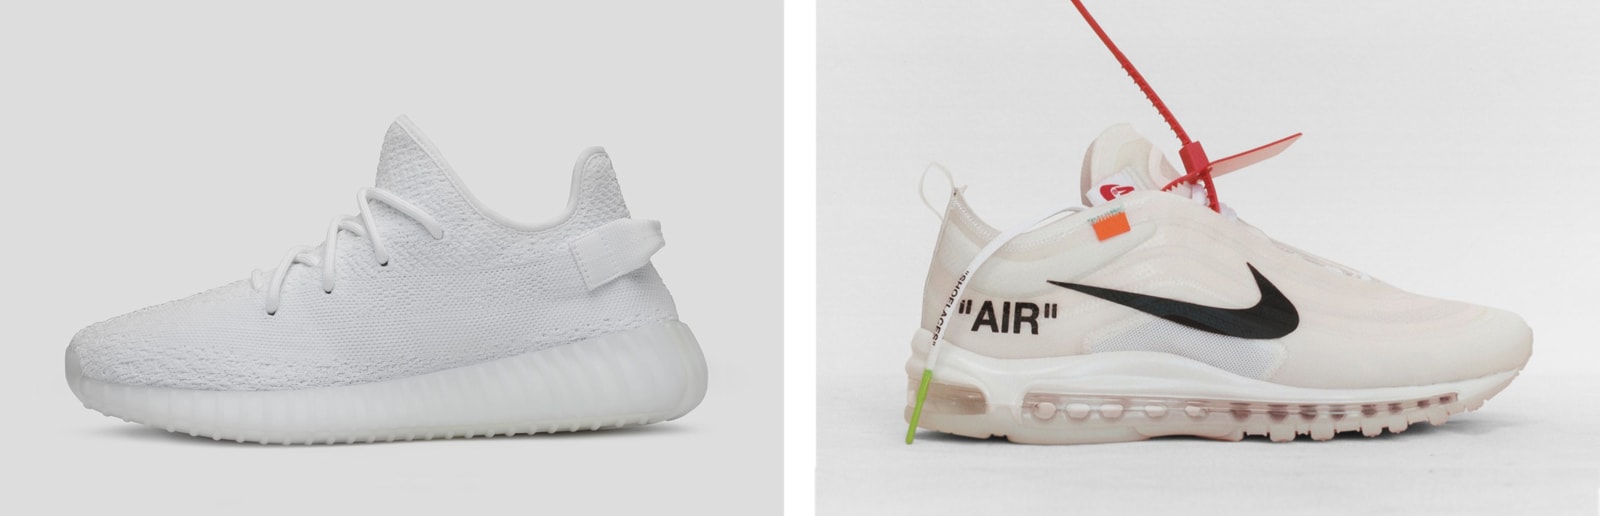 Kanye West Virgil Abloh YEEZY Off-White Nike Adidas